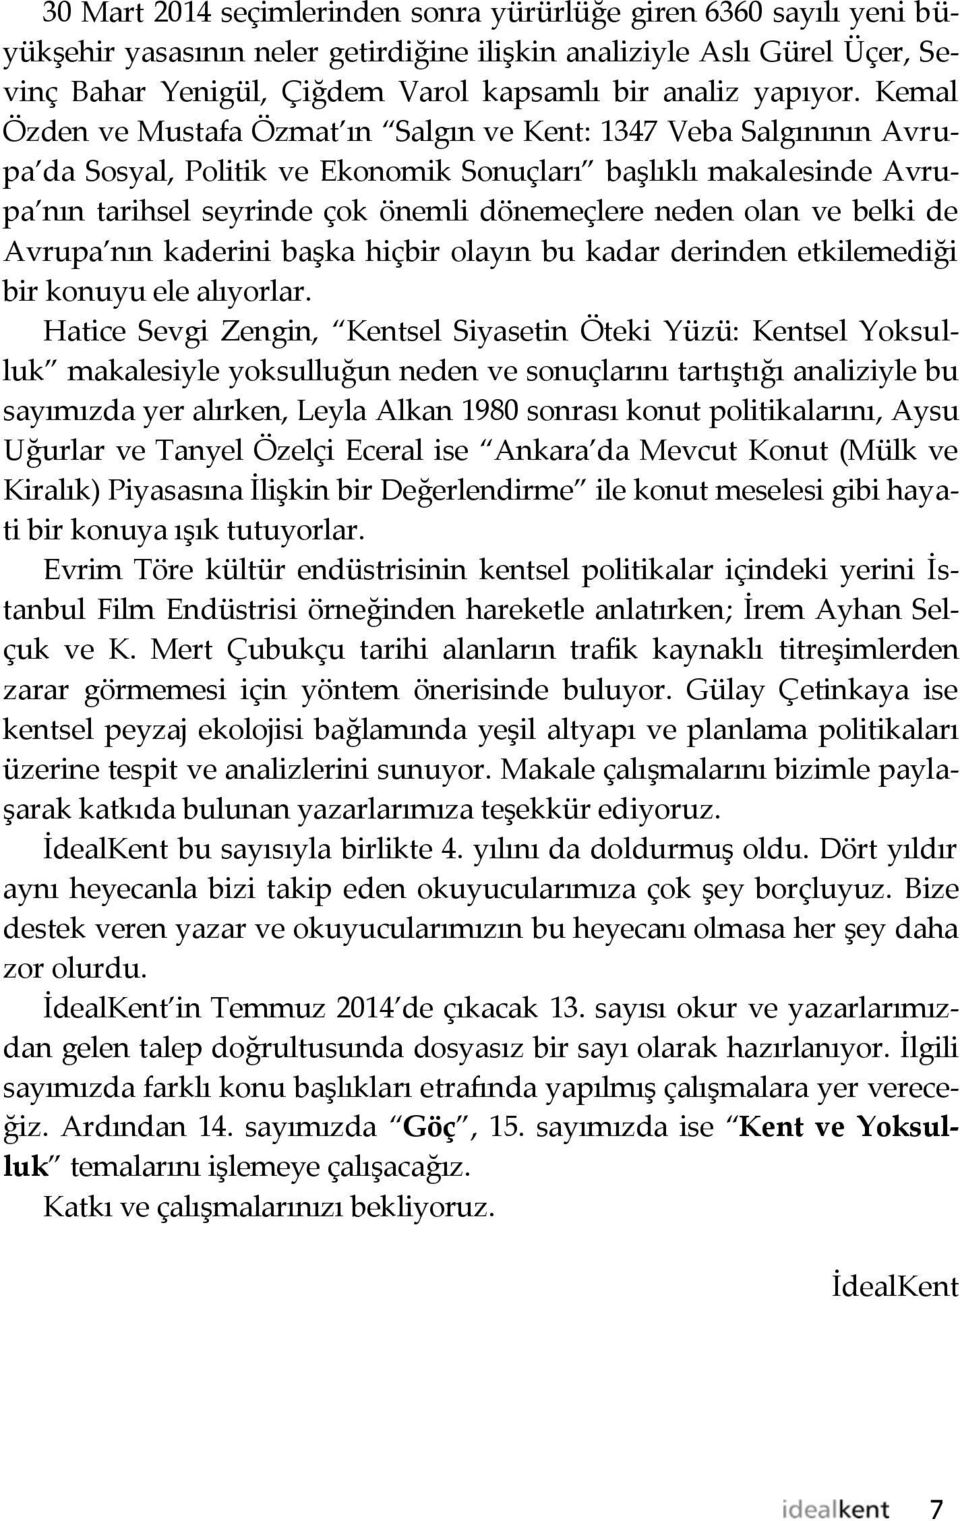 Kemal Özden ve Mustafa Özmat ın Salgın ve Kent: 1347 Veba Salgınının Avrupa da Sosyal, Politik ve Ekonomik Sonuçları başlıklı makalesinde Avrupa nın tarihsel seyrinde çok önemli dönemeçlere neden